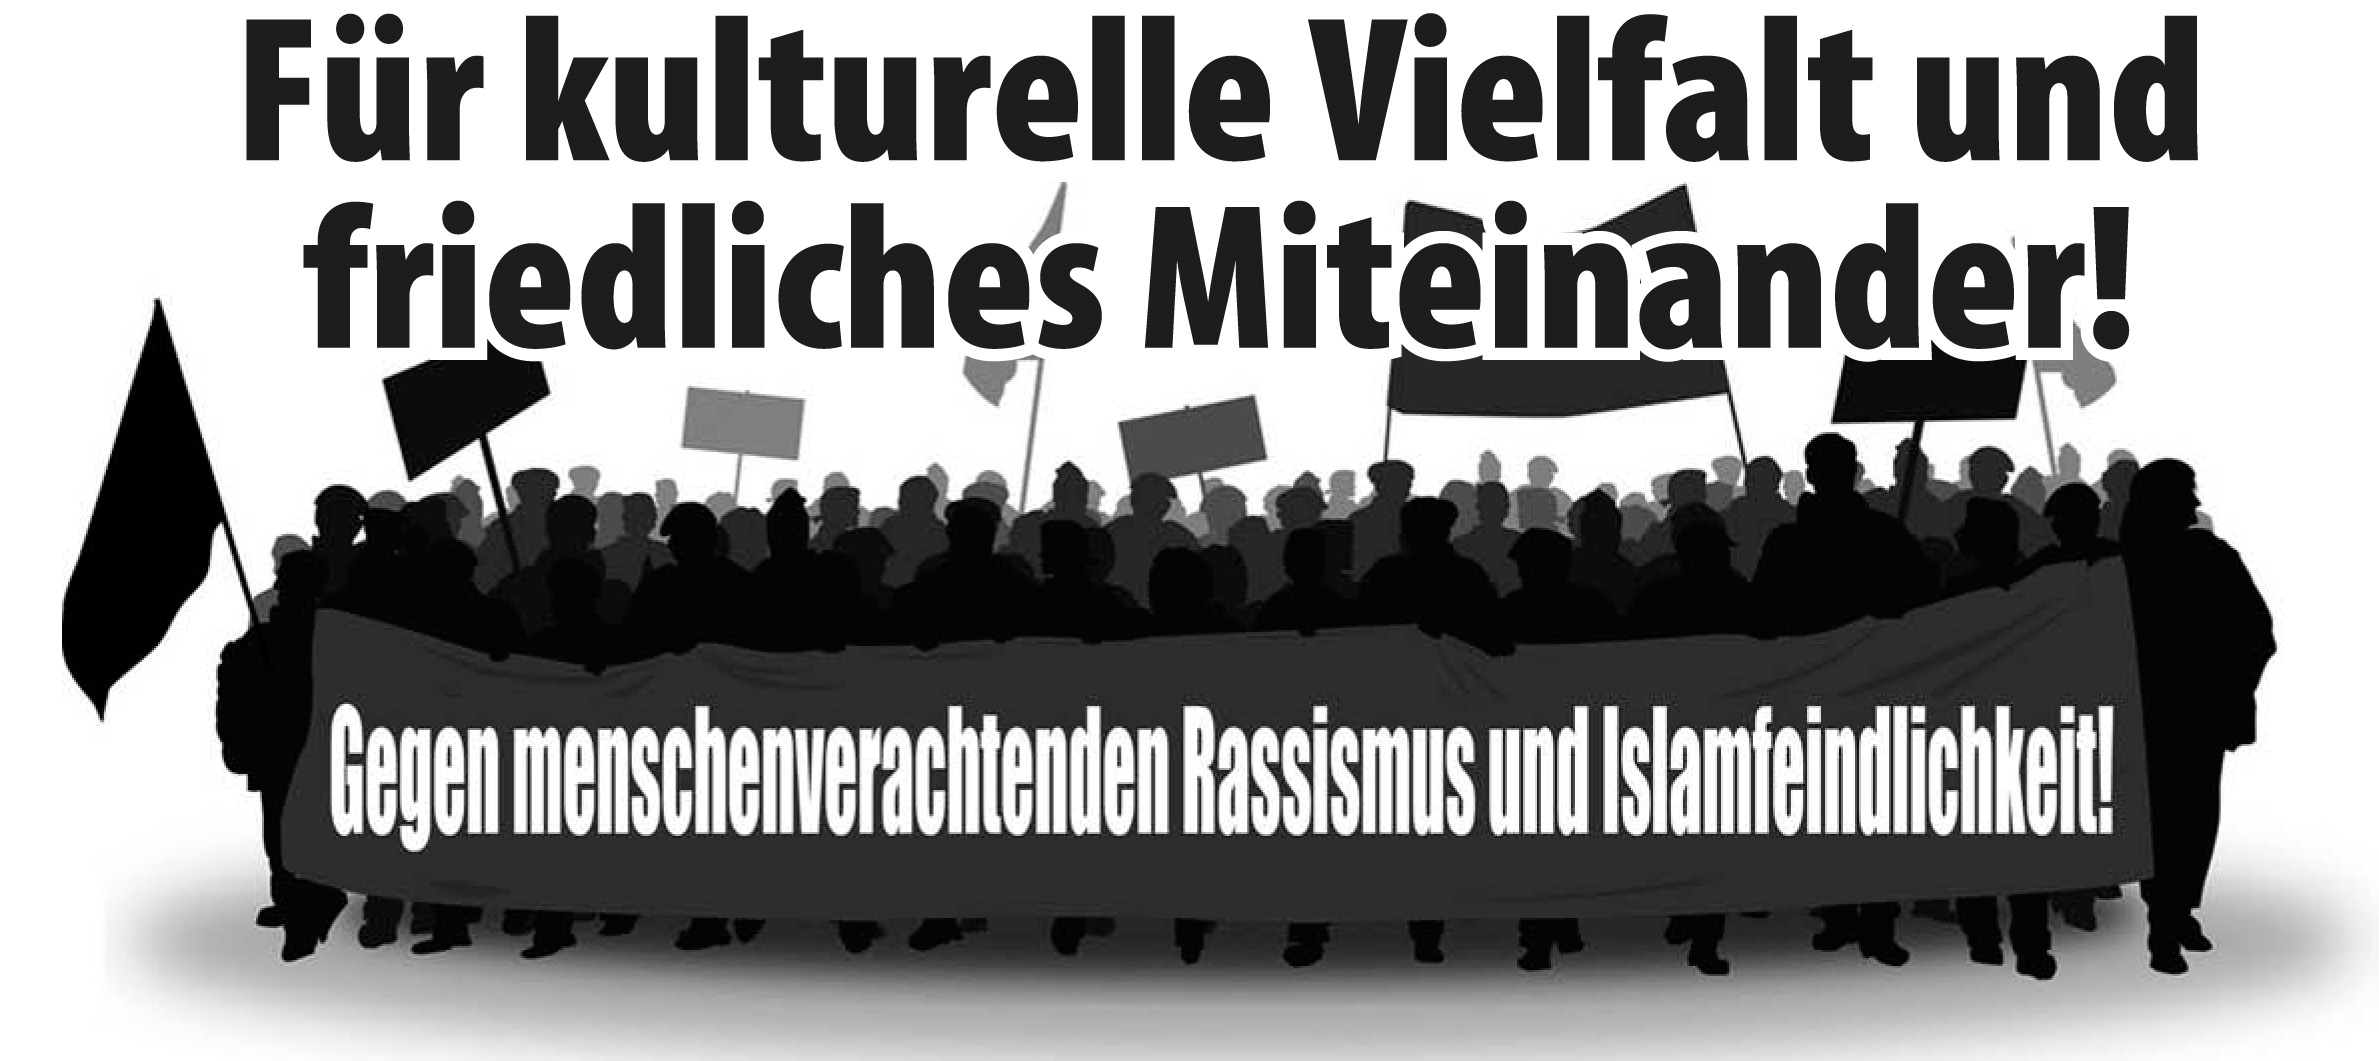 07.05.2012: Für kulturelle Vielfalt und friedliches Miteinander! Zur